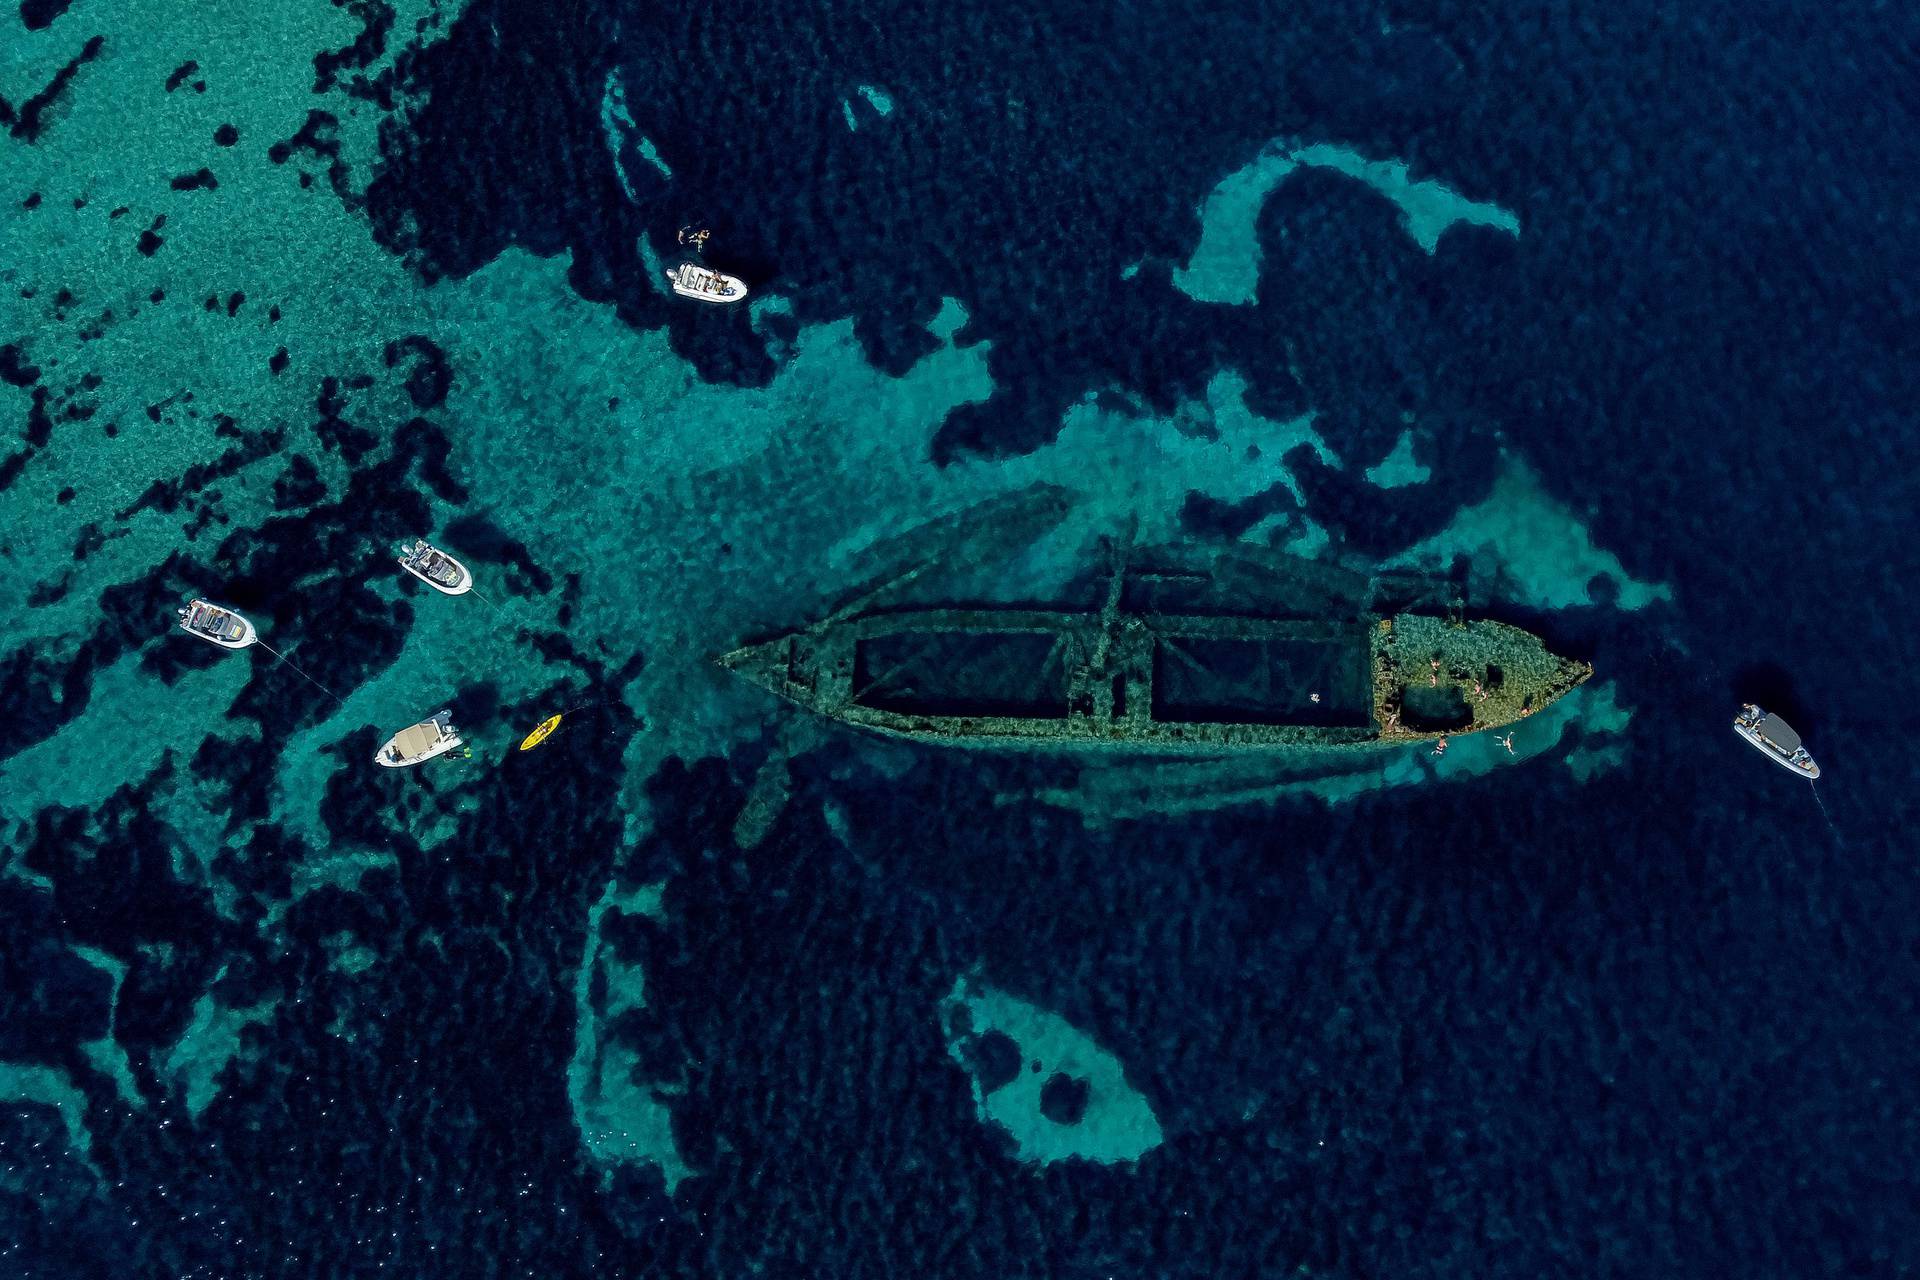 Kod Dugog otoka leži olupina talijanskog broda koja skriva tajnu staru četiri desetljeća